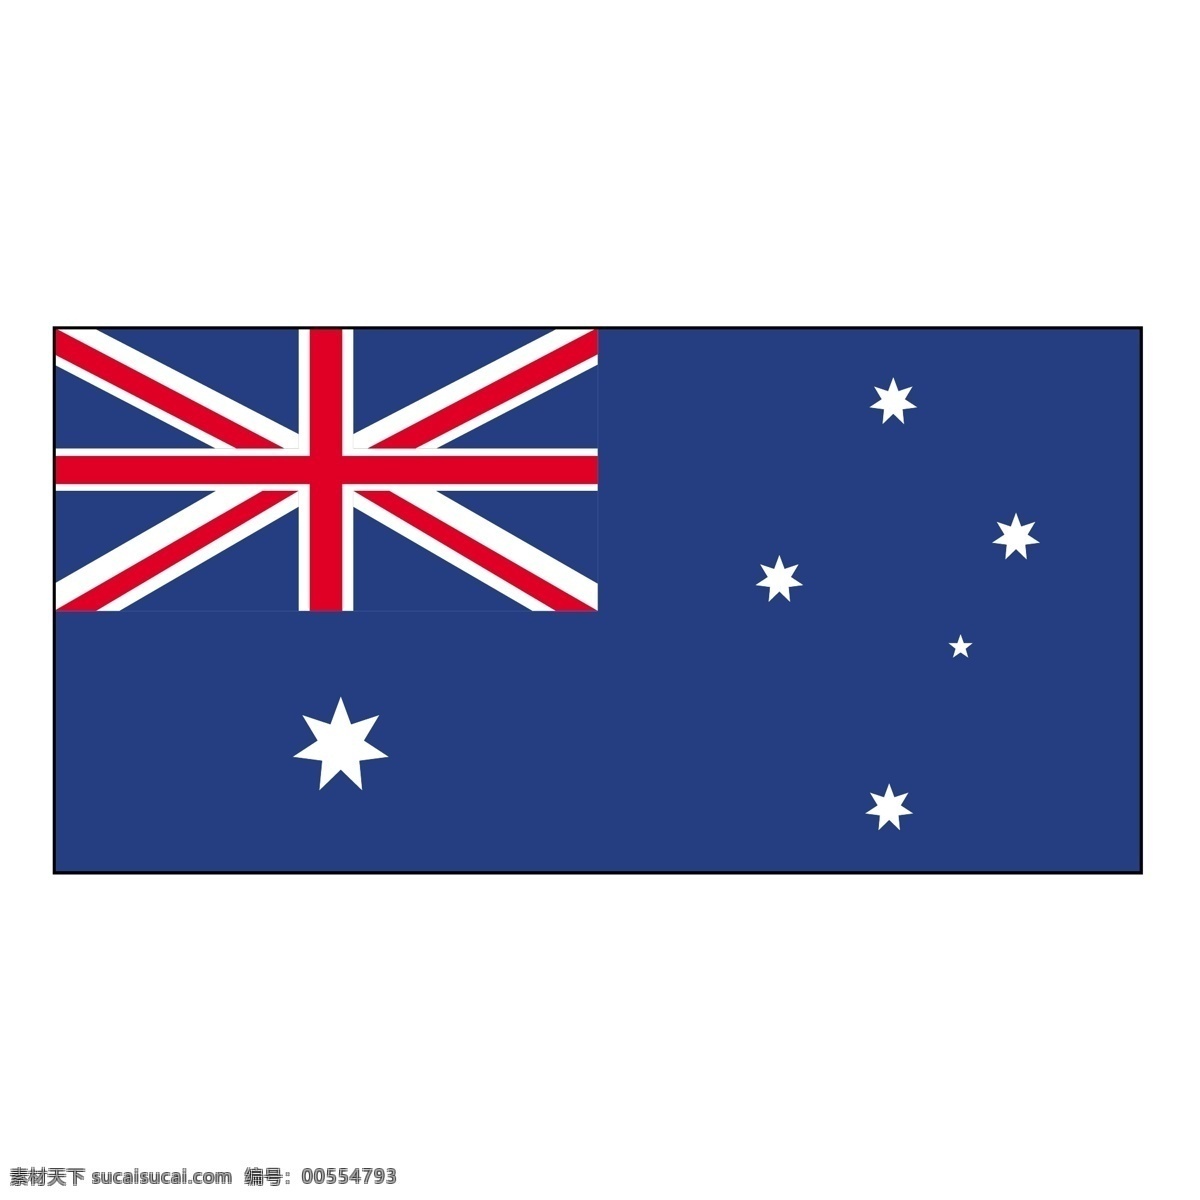 澳大利亚1 澳大利亚 澳大利亚国旗 地图 矢量 全球 自由 昆士兰 轮廓 袋鼠 西部 剪影 动画 矢量图 建筑家居